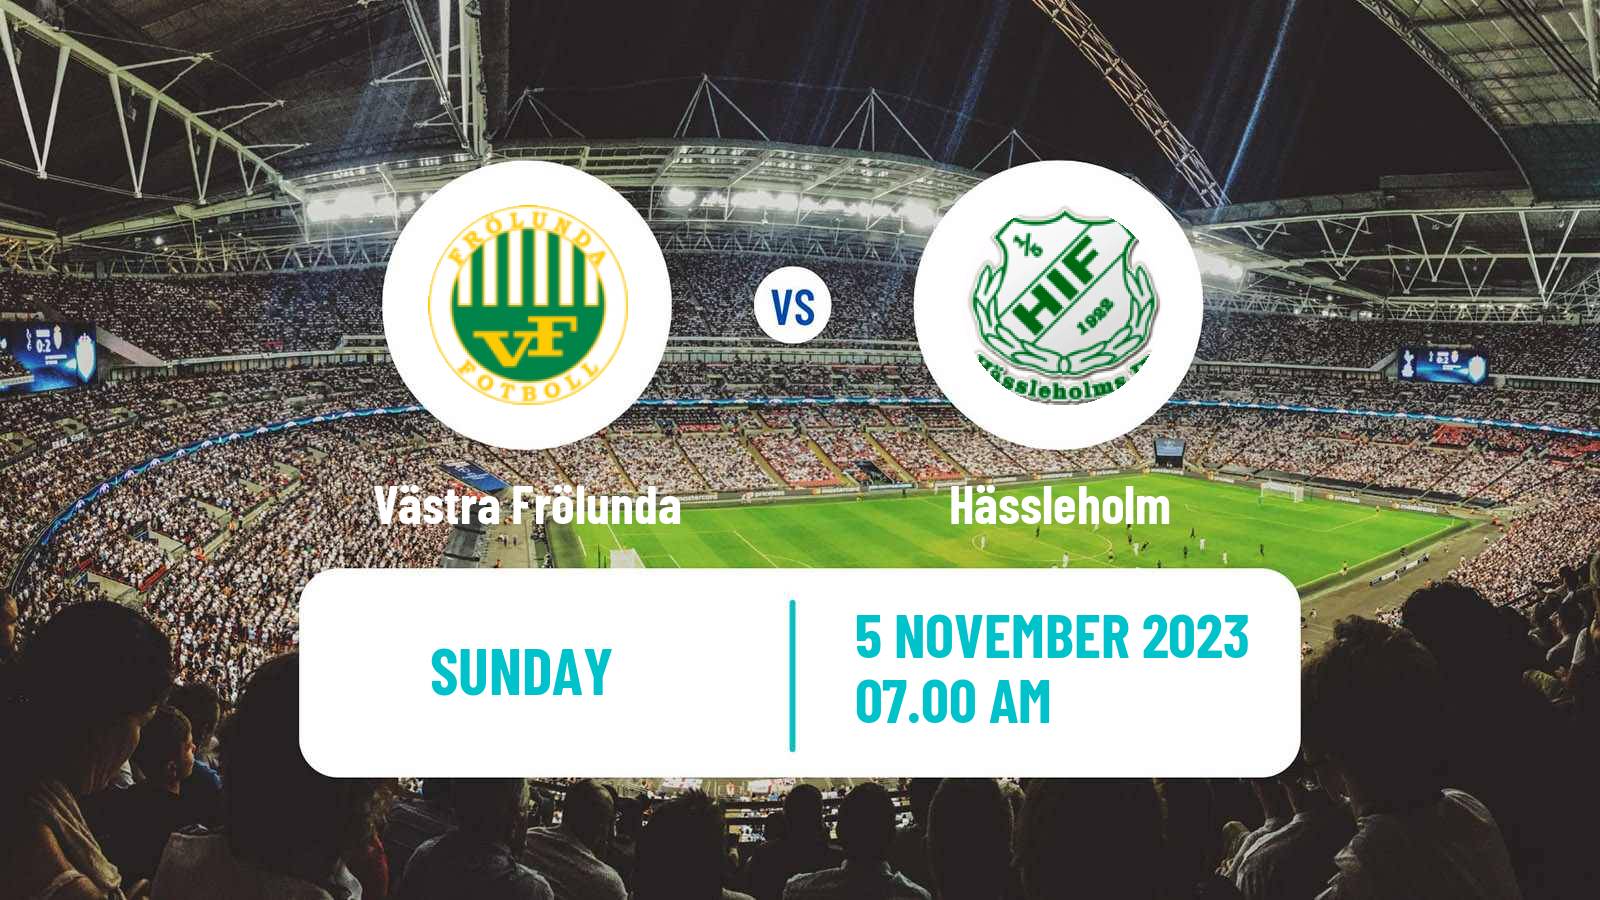 Soccer Swedish Division 2 - Norra Götaland Västra Frölunda - Hässleholm